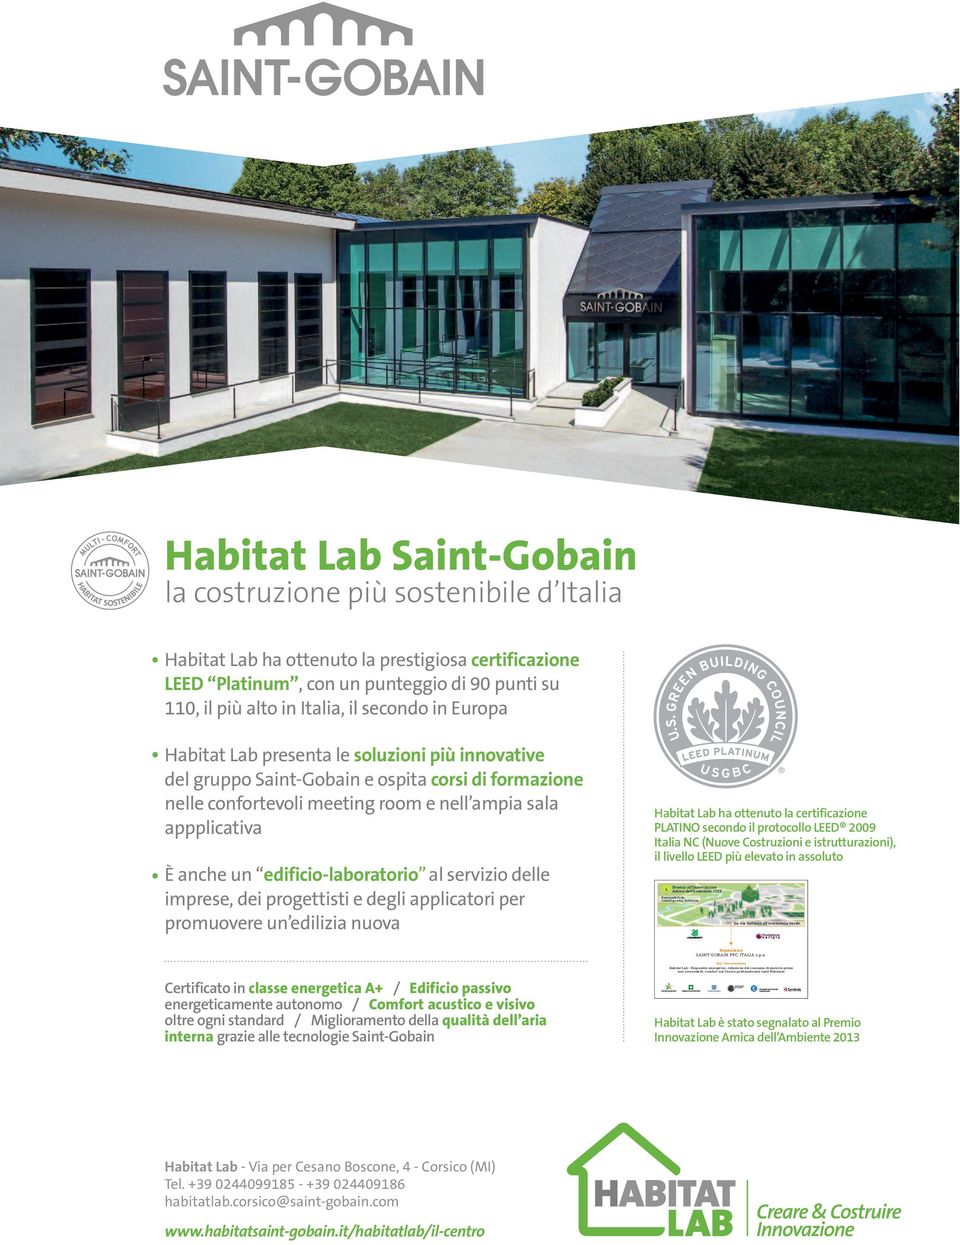 edificio-laboratorio al servizio delle imprese, dei progettisti e degli applicatori per promuovere un edilizia nuova Habitat Lab ha ottenuto la certificazione PLATINO secondo il protocollo LEED 2009